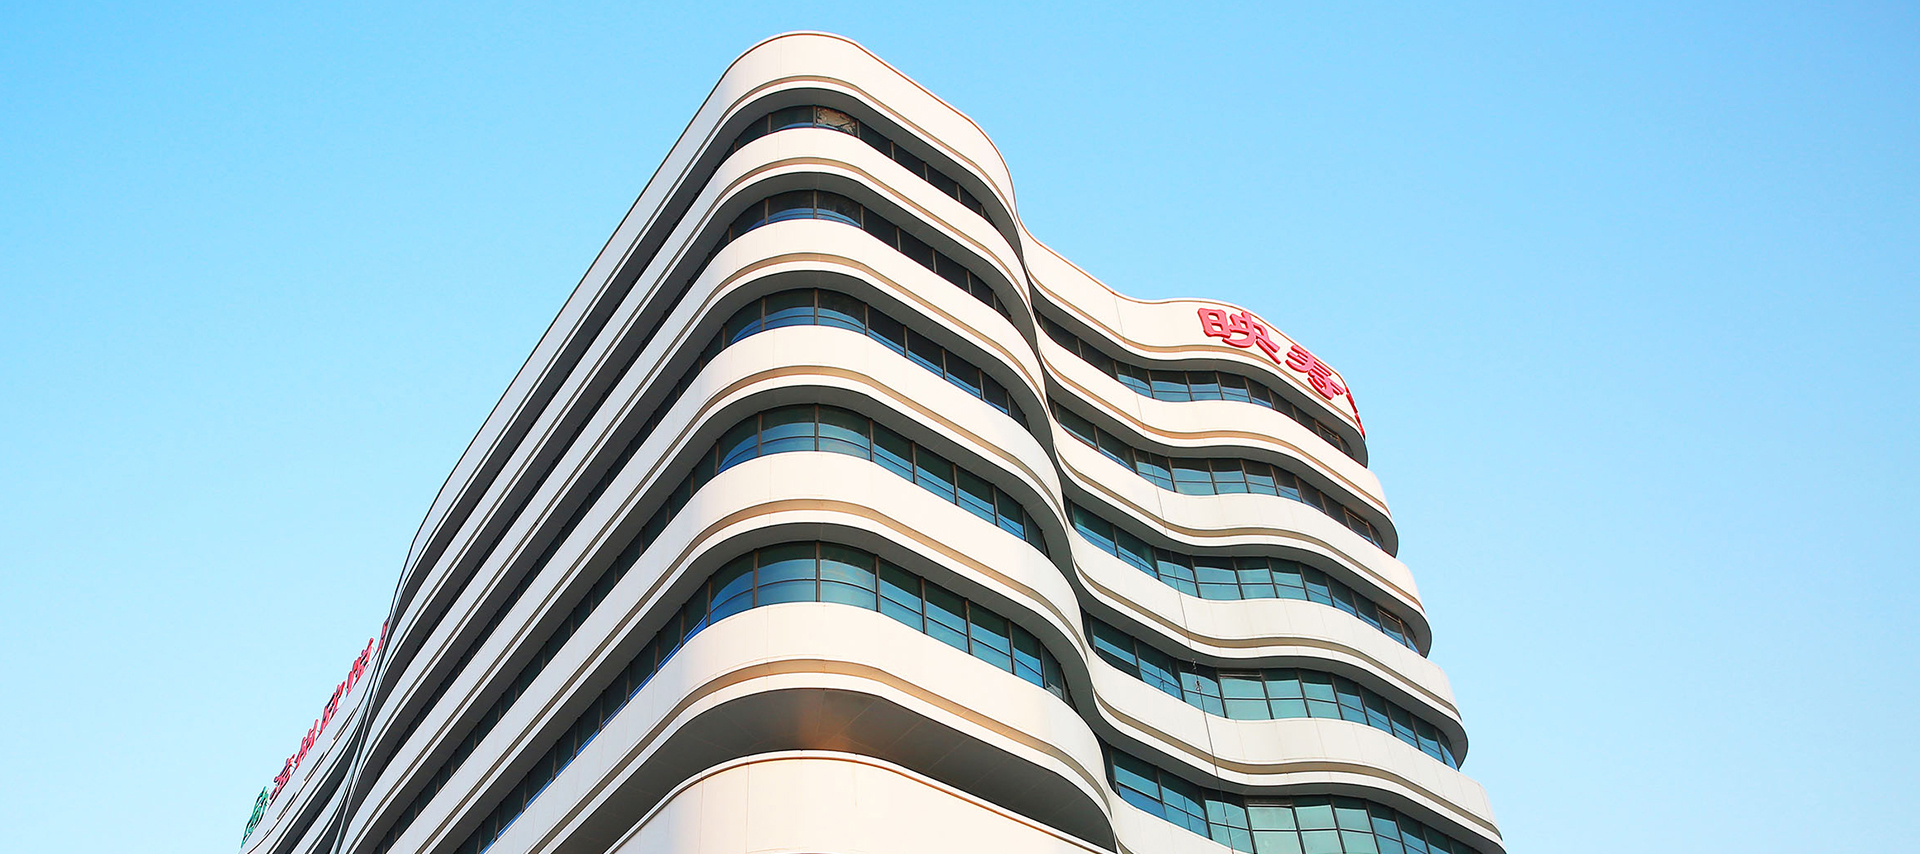 Компания с ограниченной ответственностью «Реабилитационная клиника восстановления здоровья Синьюэ городского округа Биньчжоу» (Binzhou Xinyue Health Recovery Hospital Co., Ltd.)

